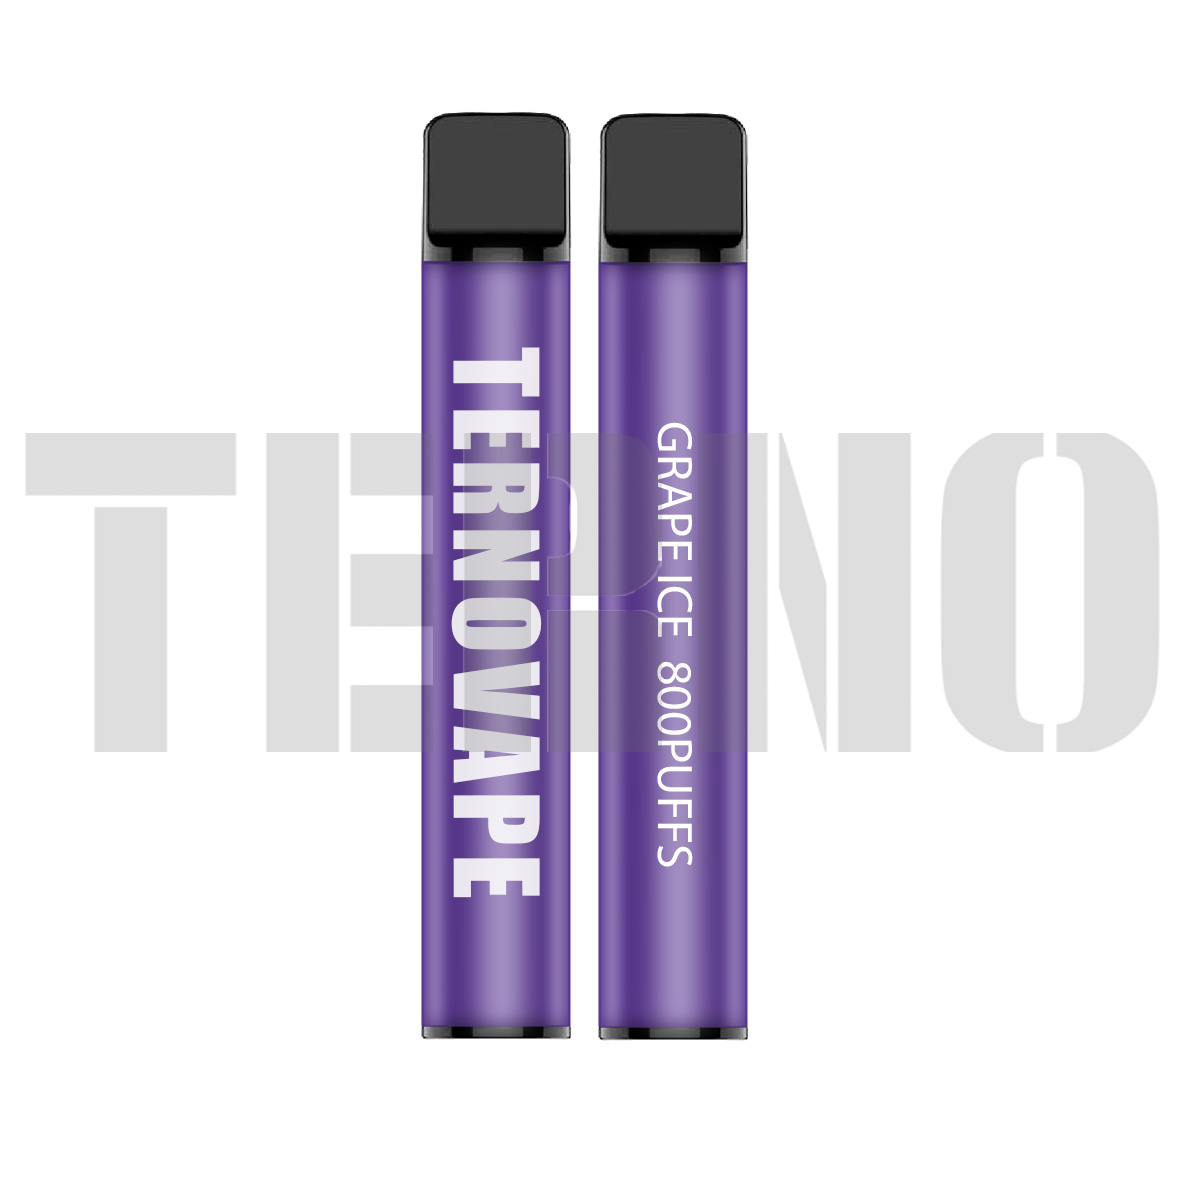 Terno YT800 disposable vape kit 800puffs - 2 